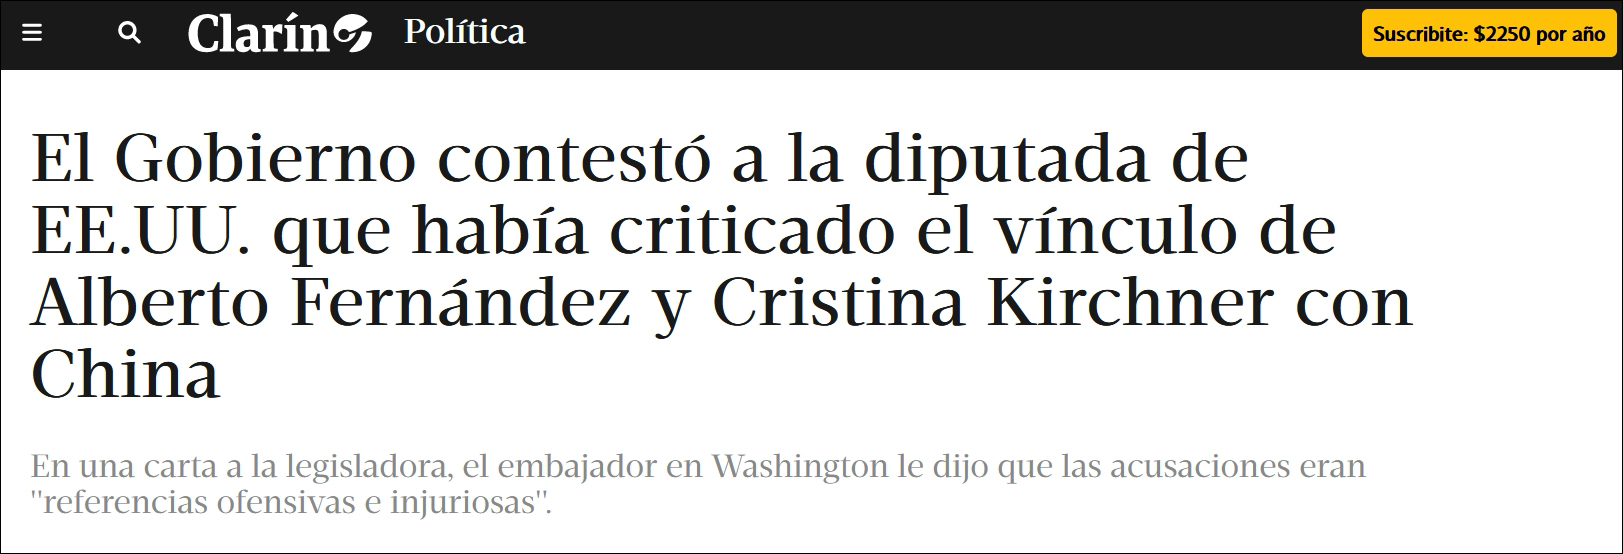 美议员抹黑中阿关系 阿根廷驻美大使听不下去了